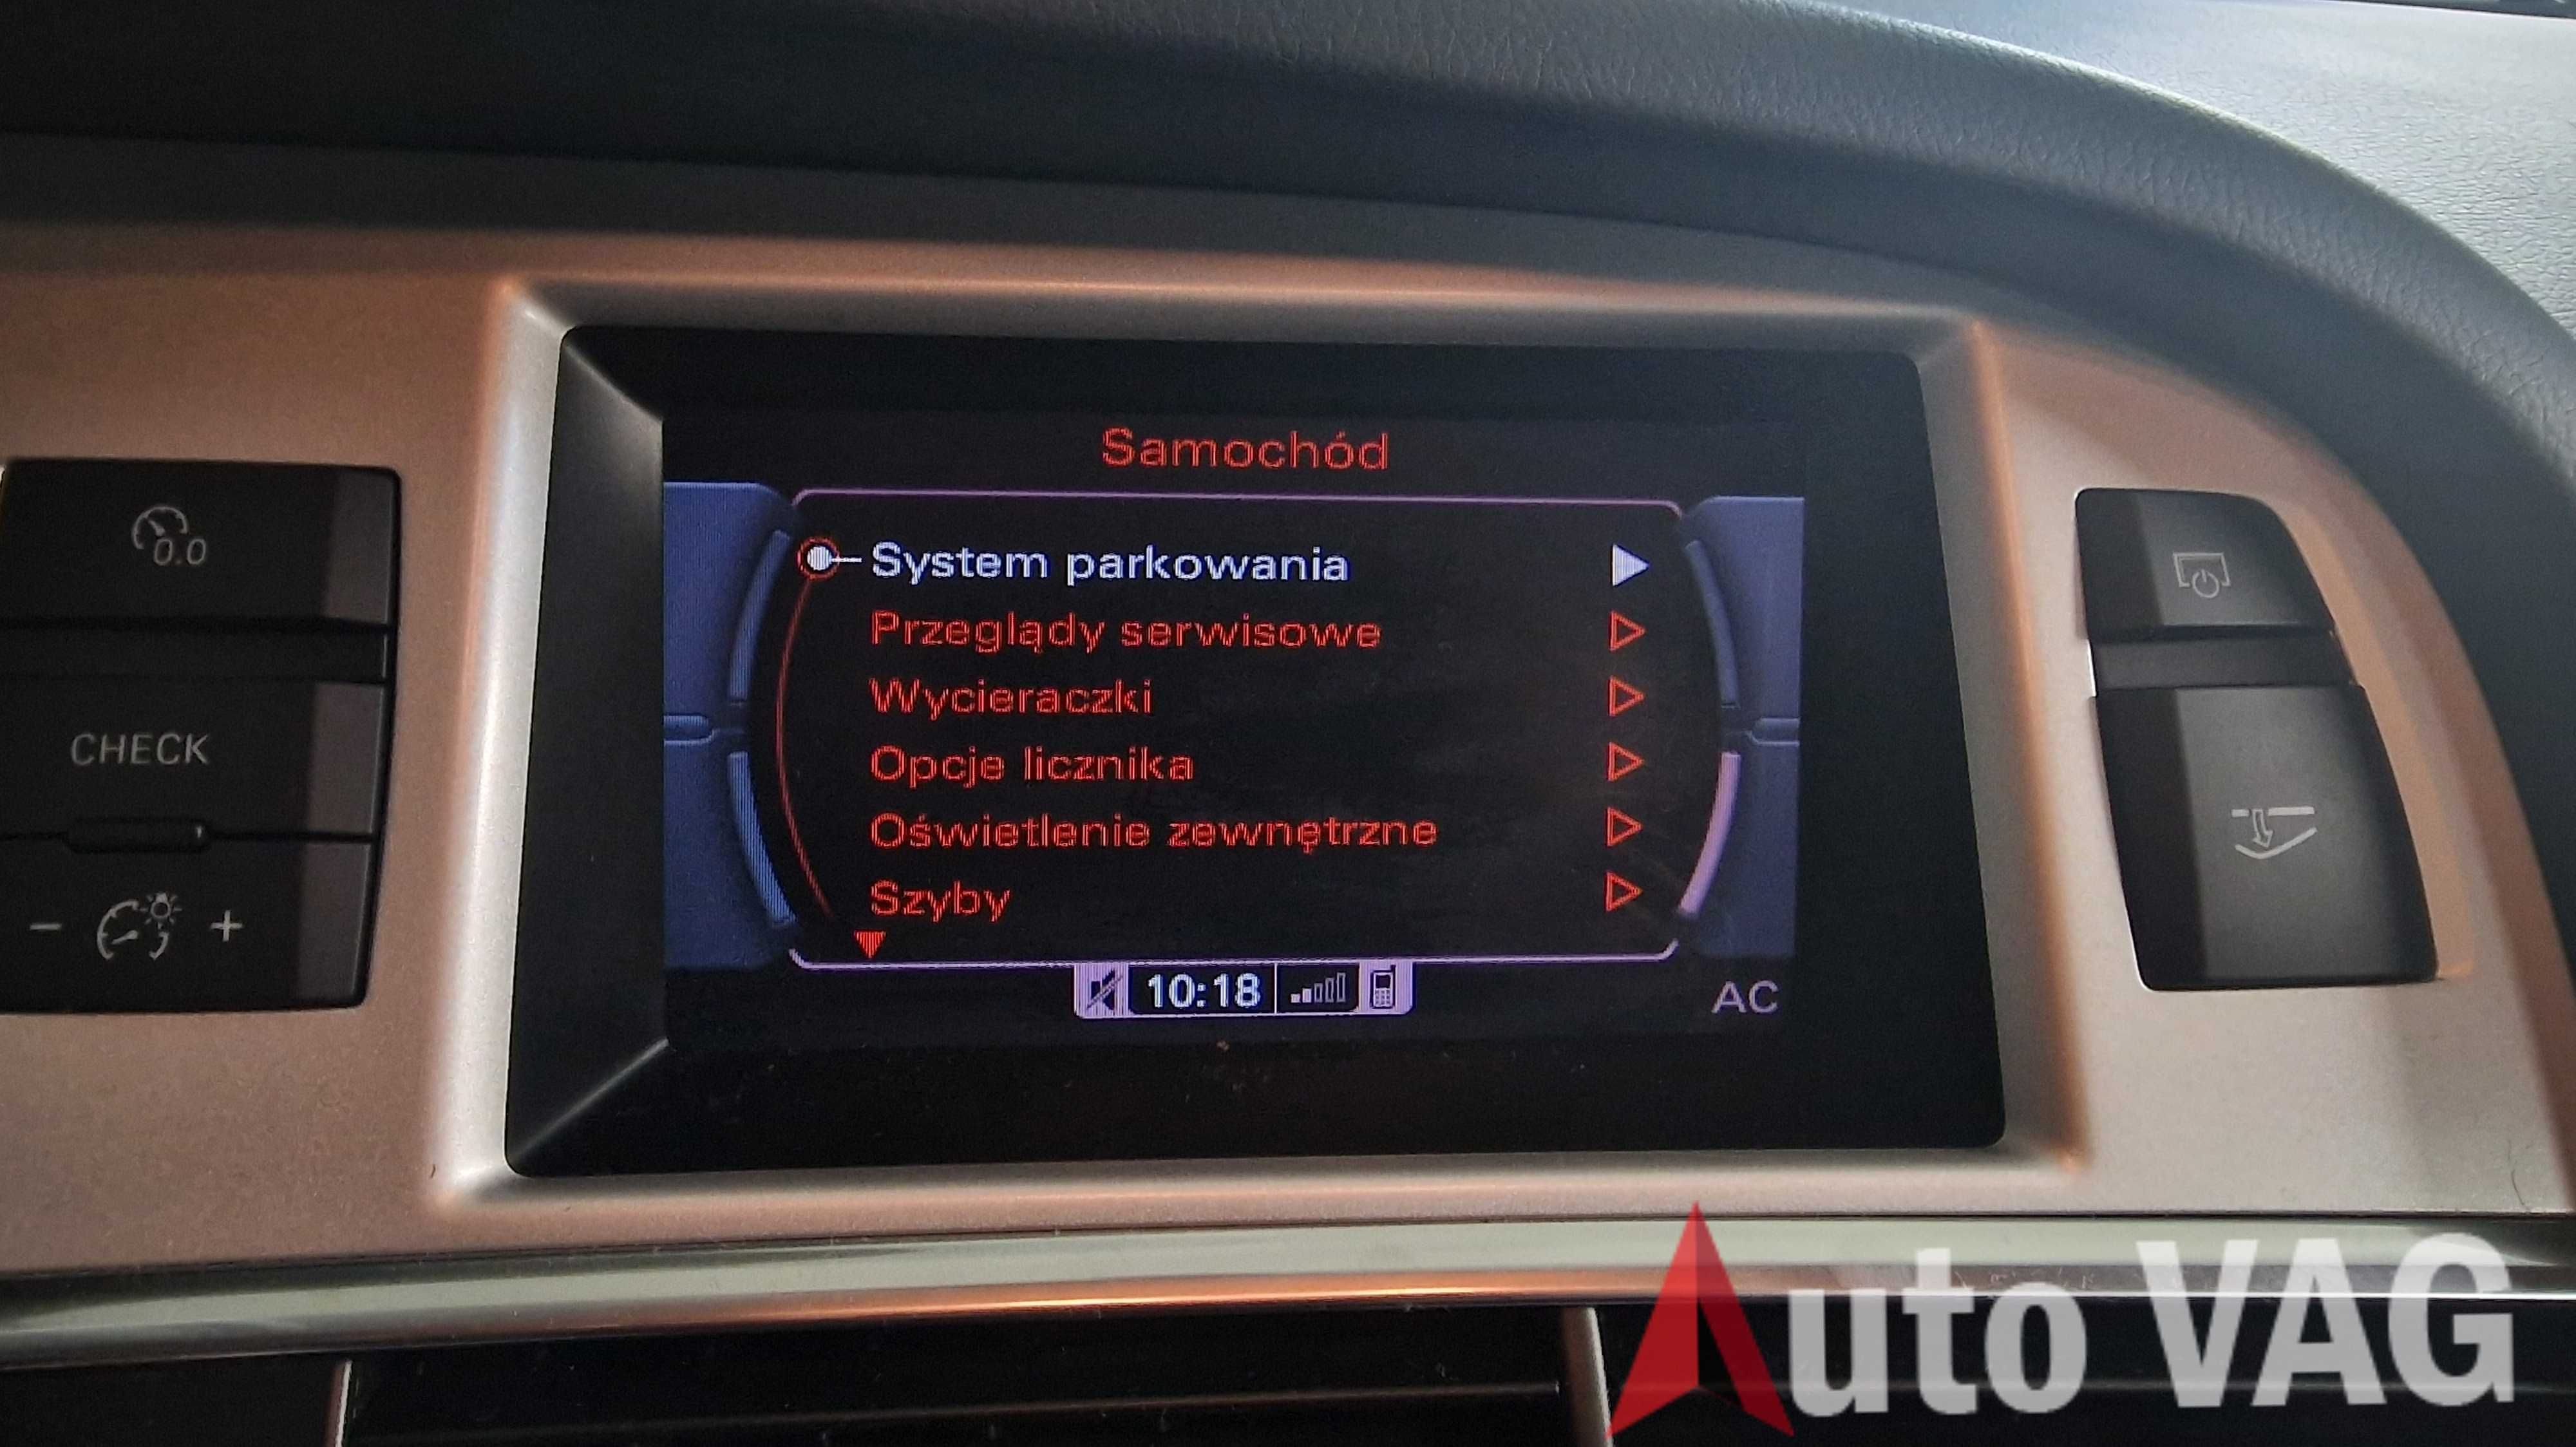 Polskie Menu, Nawigacja Audi VW SEAT Skoda MMI 3G Konwersja USA